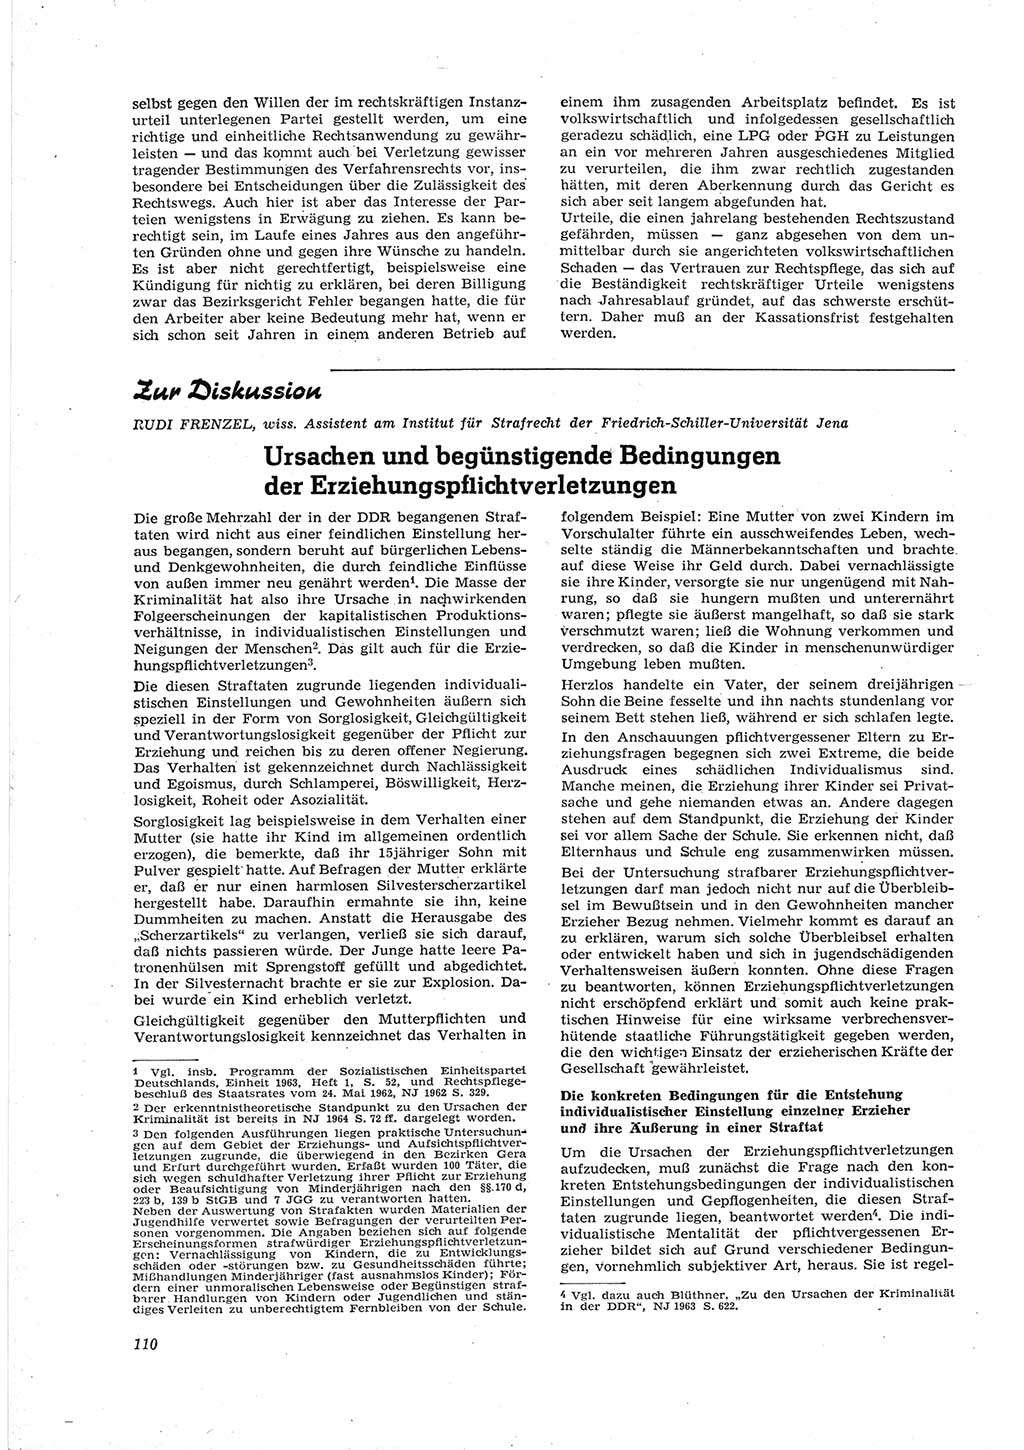 Neue Justiz (NJ), Zeitschrift für Recht und Rechtswissenschaft [Deutsche Demokratische Republik (DDR)], 18. Jahrgang 1964, Seite 110 (NJ DDR 1964, S. 110)